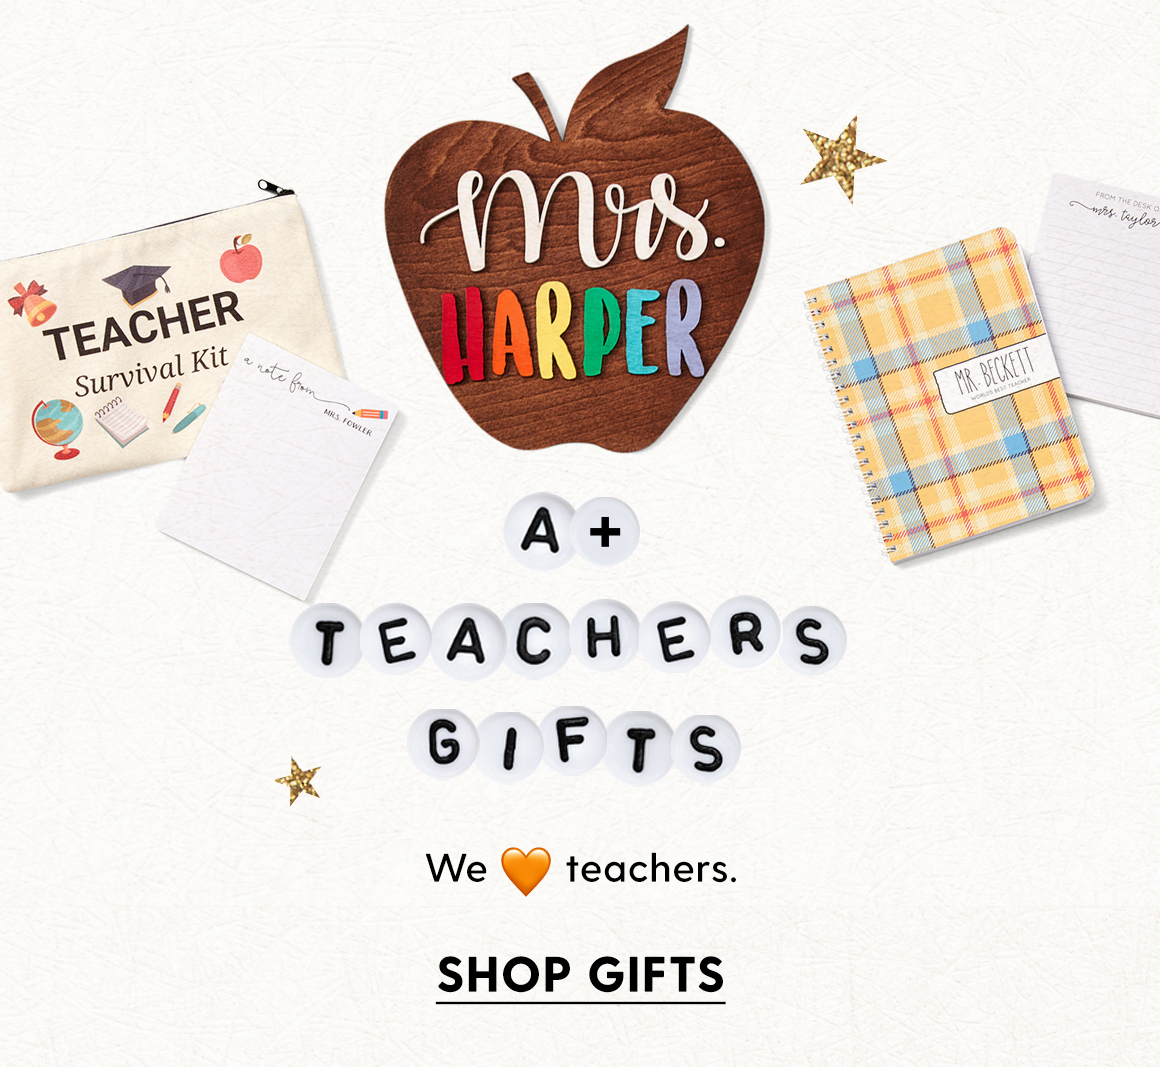 A+ teachers gifts